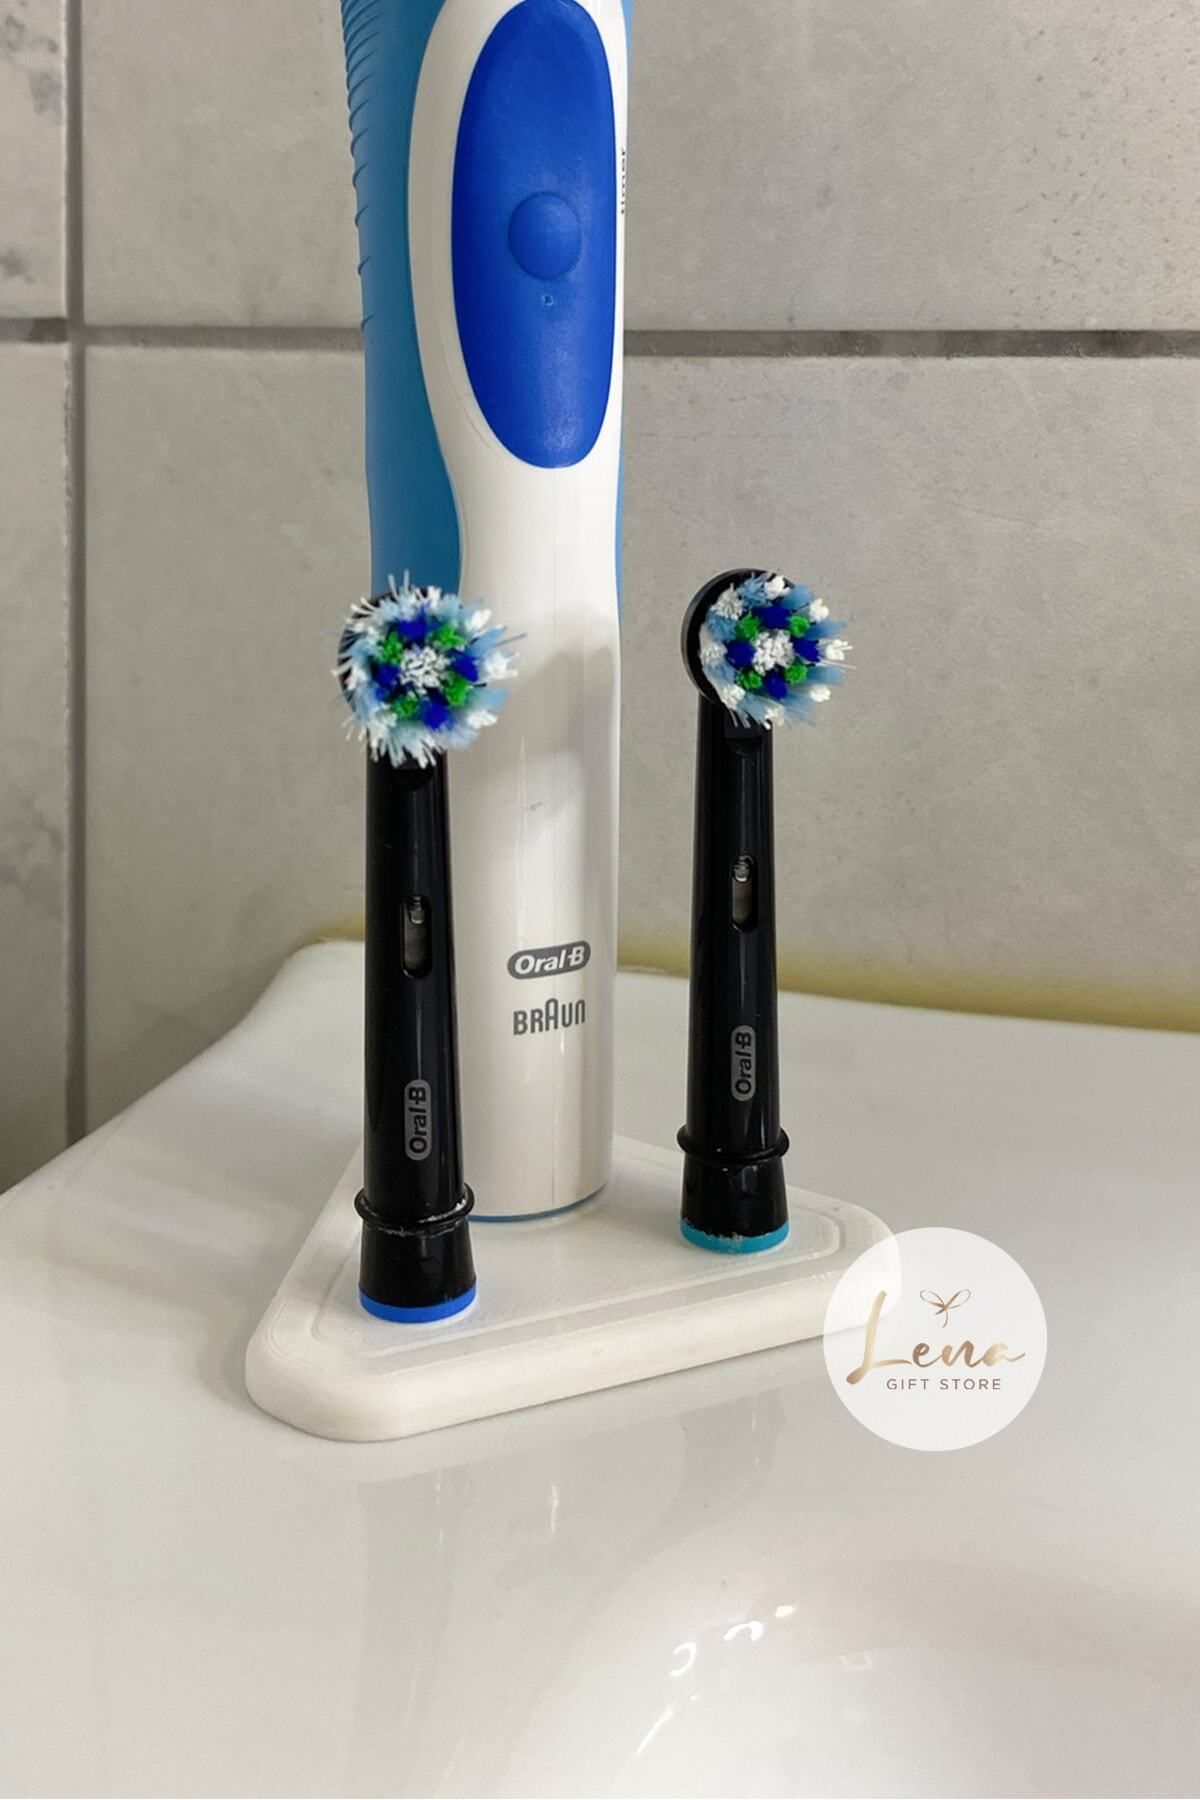 Lena Gift Store Oral-B Uyumlu Şarjlı Diş Fırçası ve Başlıkları için Stand (1 Fırça, 2 Başlık)